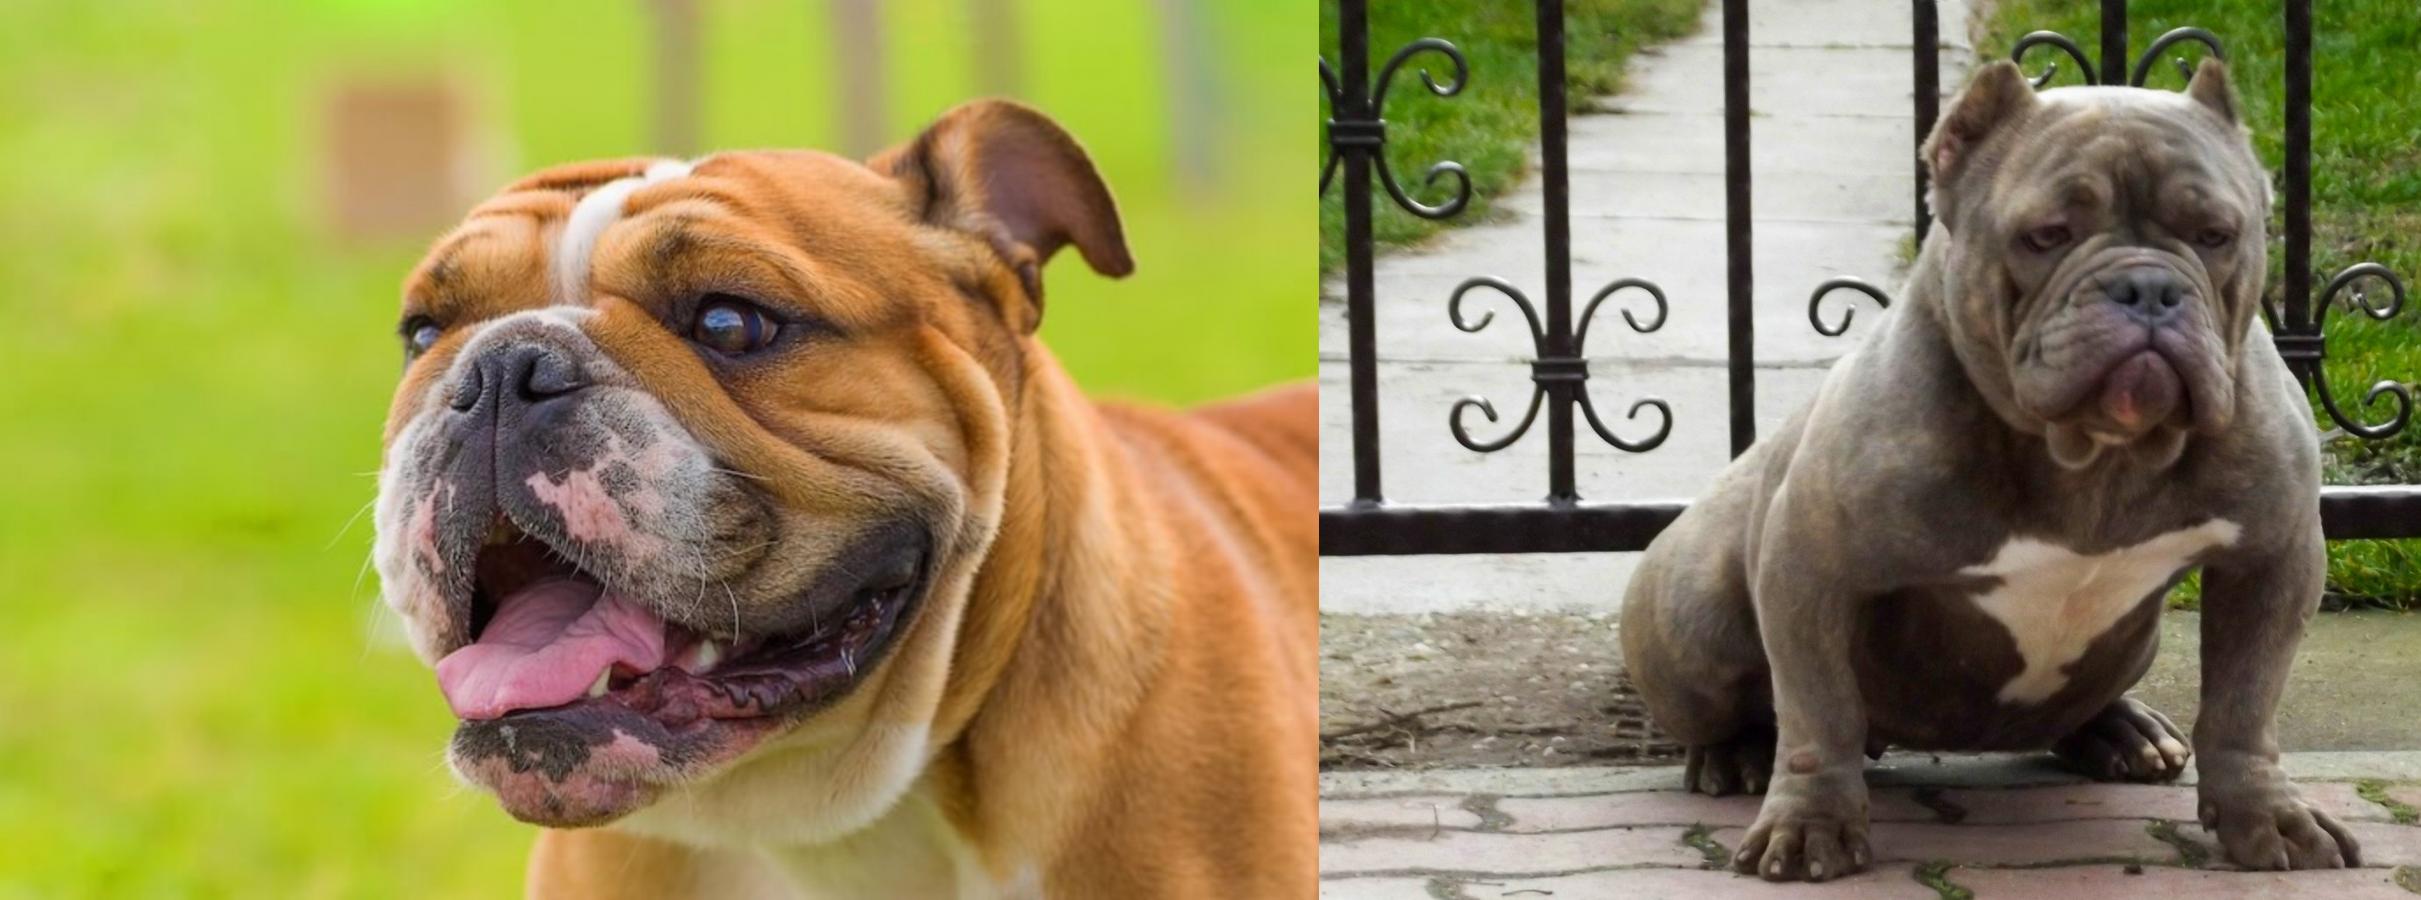 Miniature English Bulldog Vs American Bully Breed Comparison